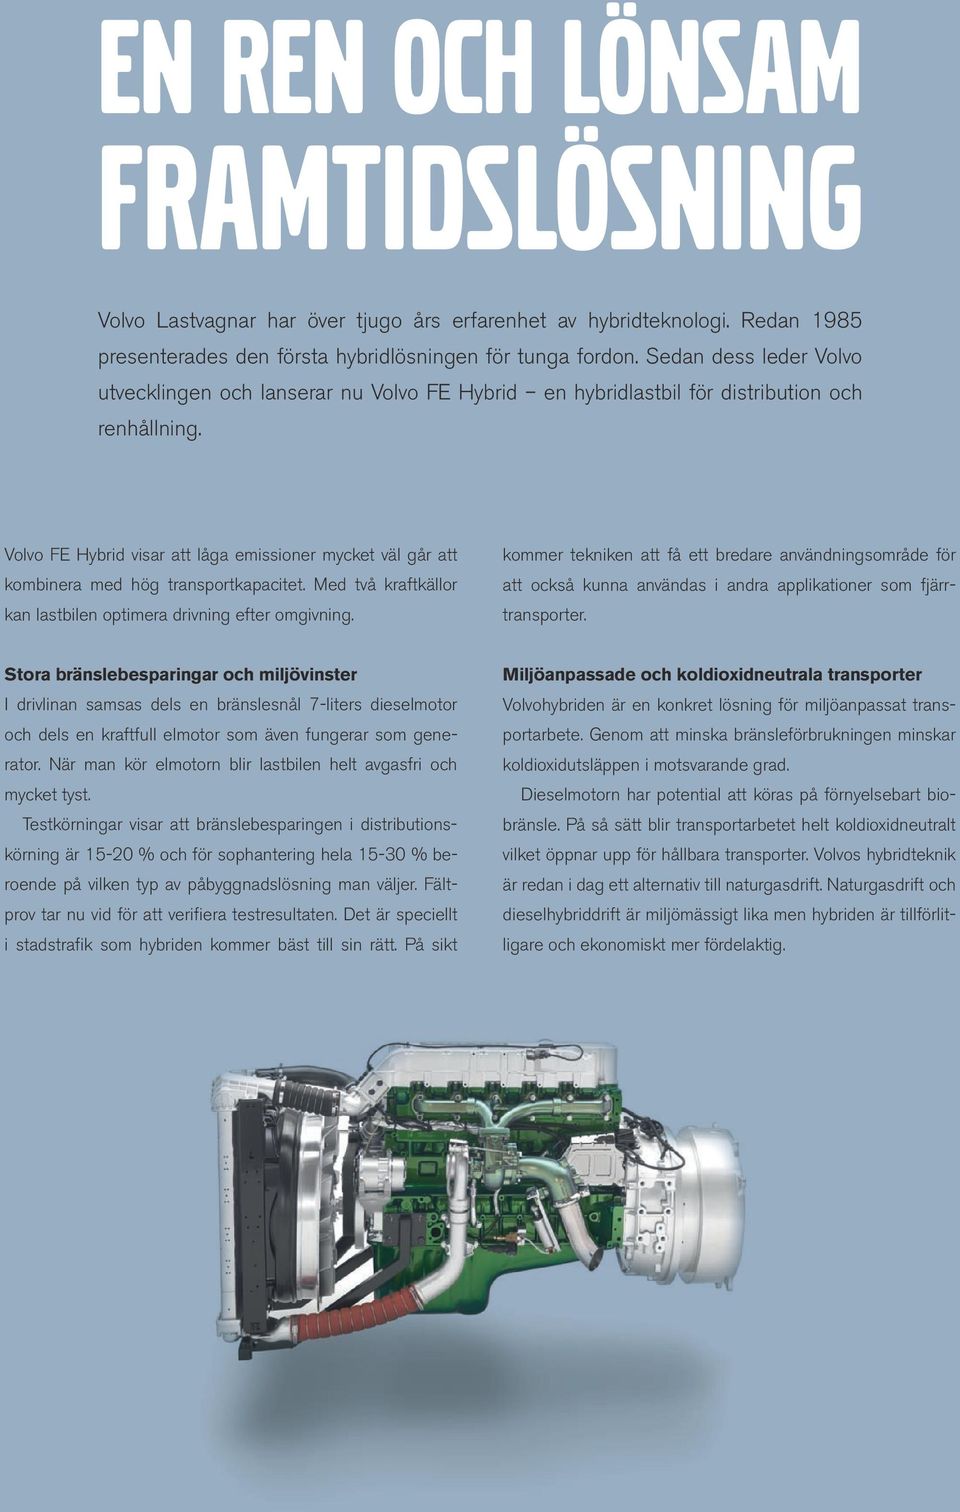 Volvo FE Hybrid visar att låga emissioner mycket väl går att kombinera med hög transportkapacitet. Med två kraftkällor kan lastbilen optimera drivning efter omgivning.